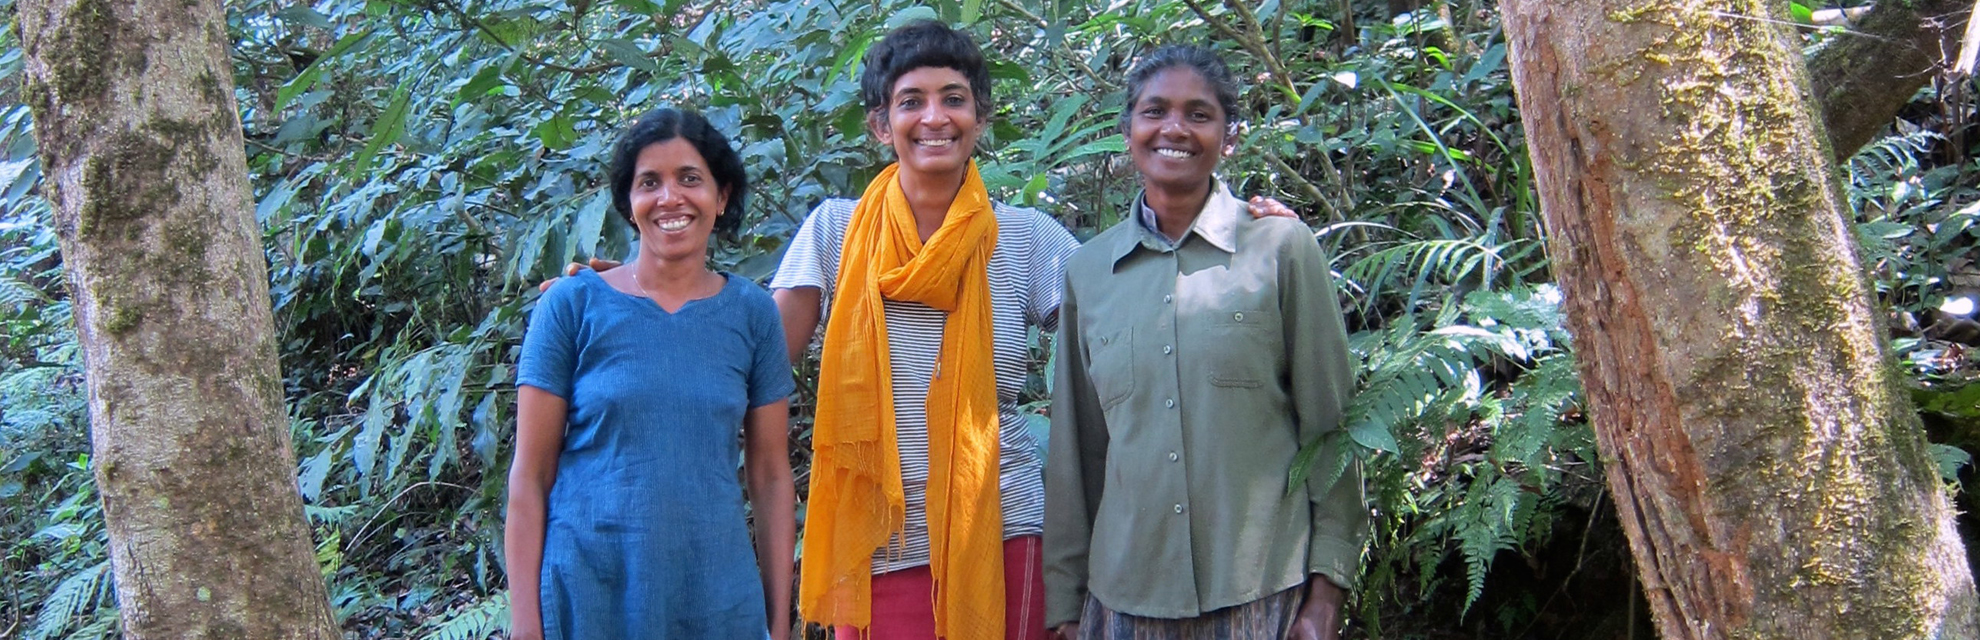 환경보호론자인 수프라바 세샨(Suprabha Seshan)은 구루쿨라 식물 보호구역(Gurukula Botanical Sanctuary)에 열대우림을 만들고 있습니다.